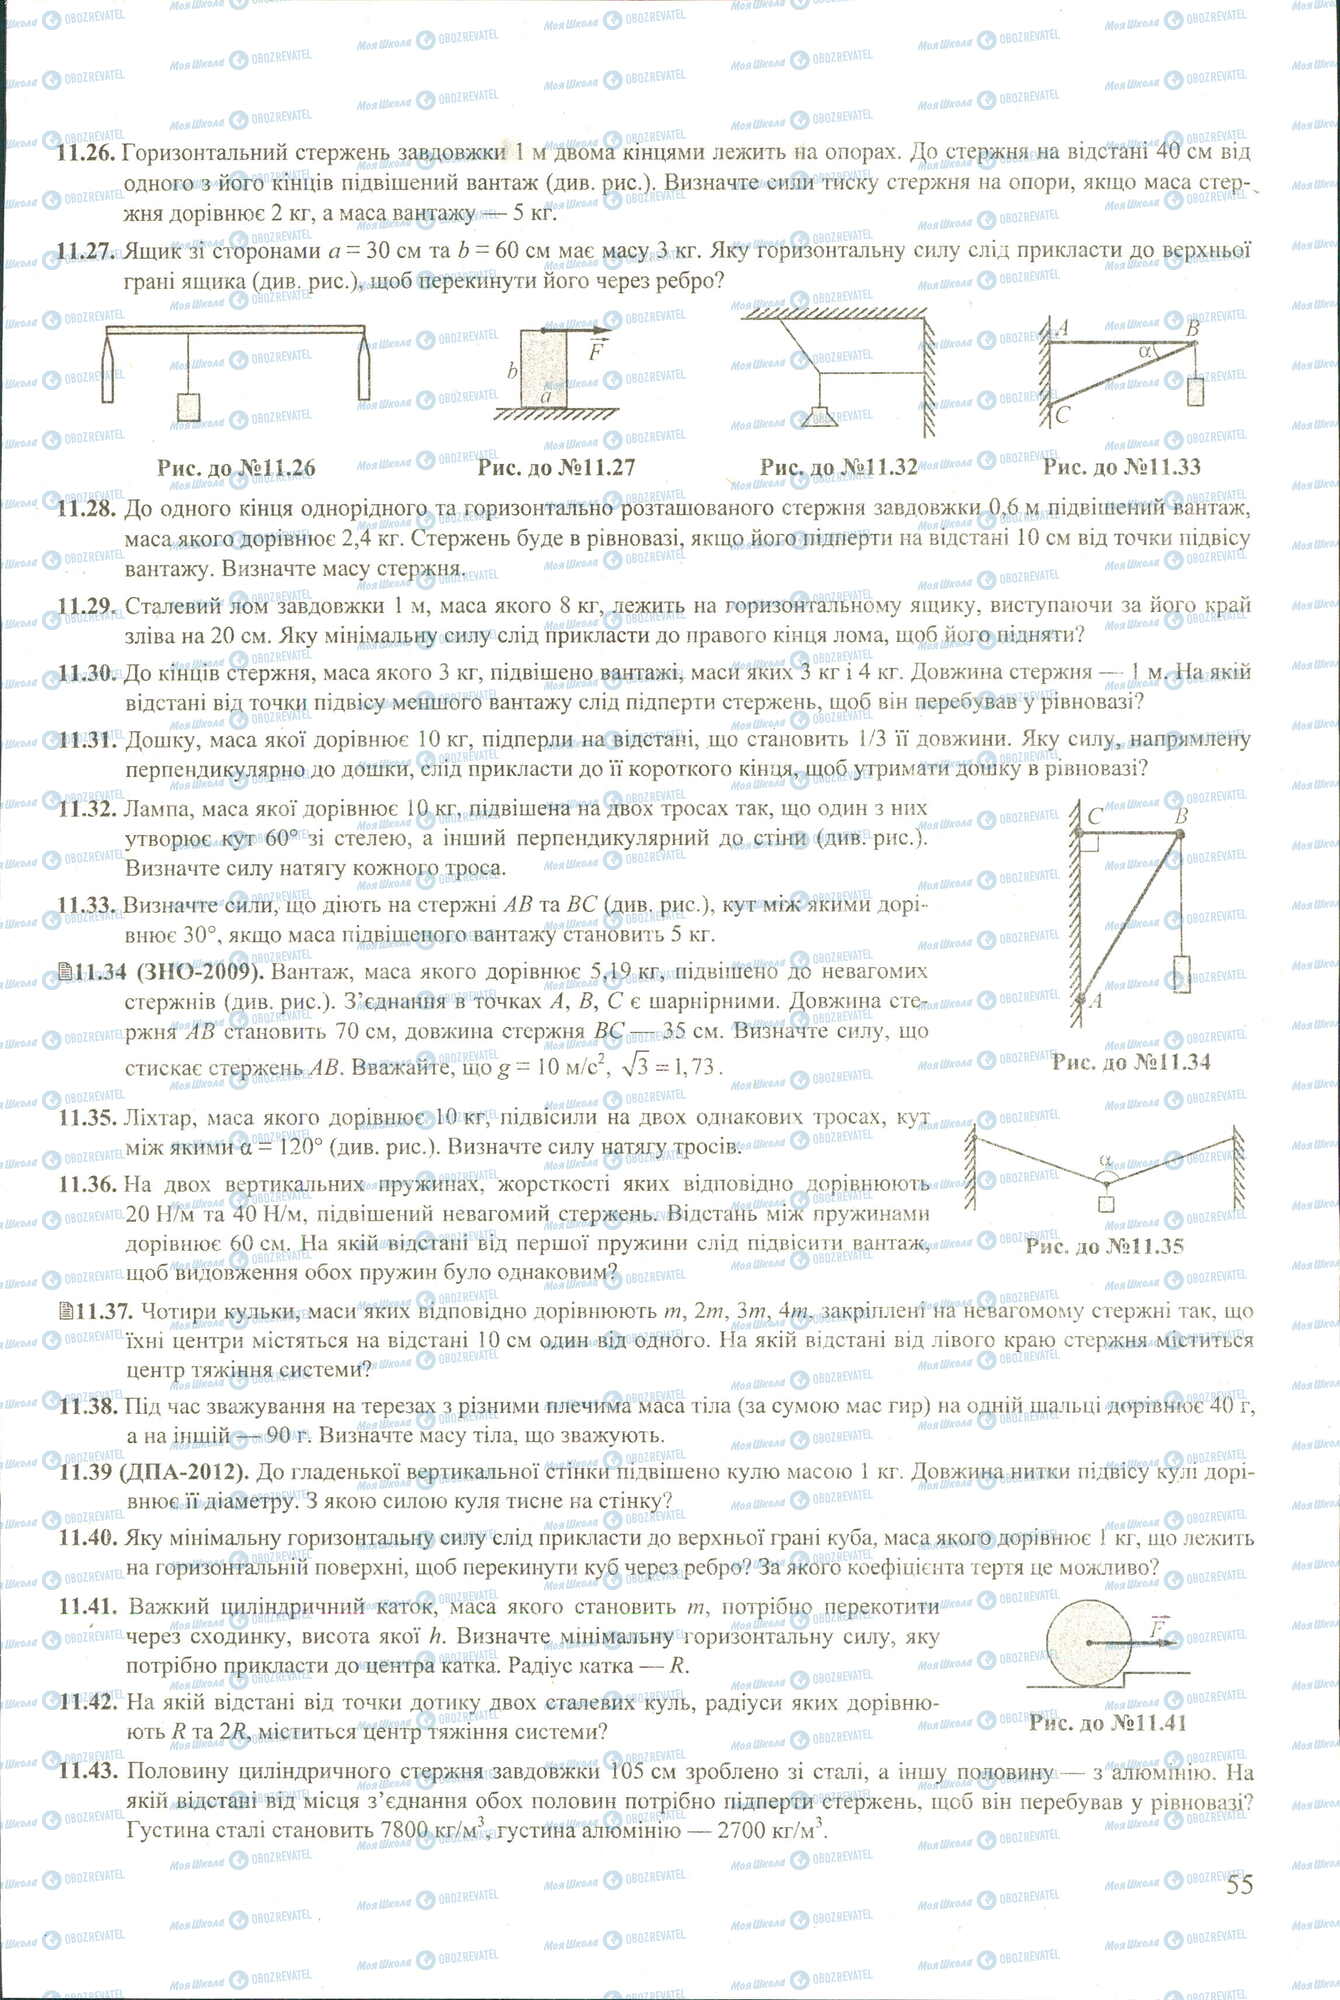 ЗНО Физика 11 класс страница 26-43